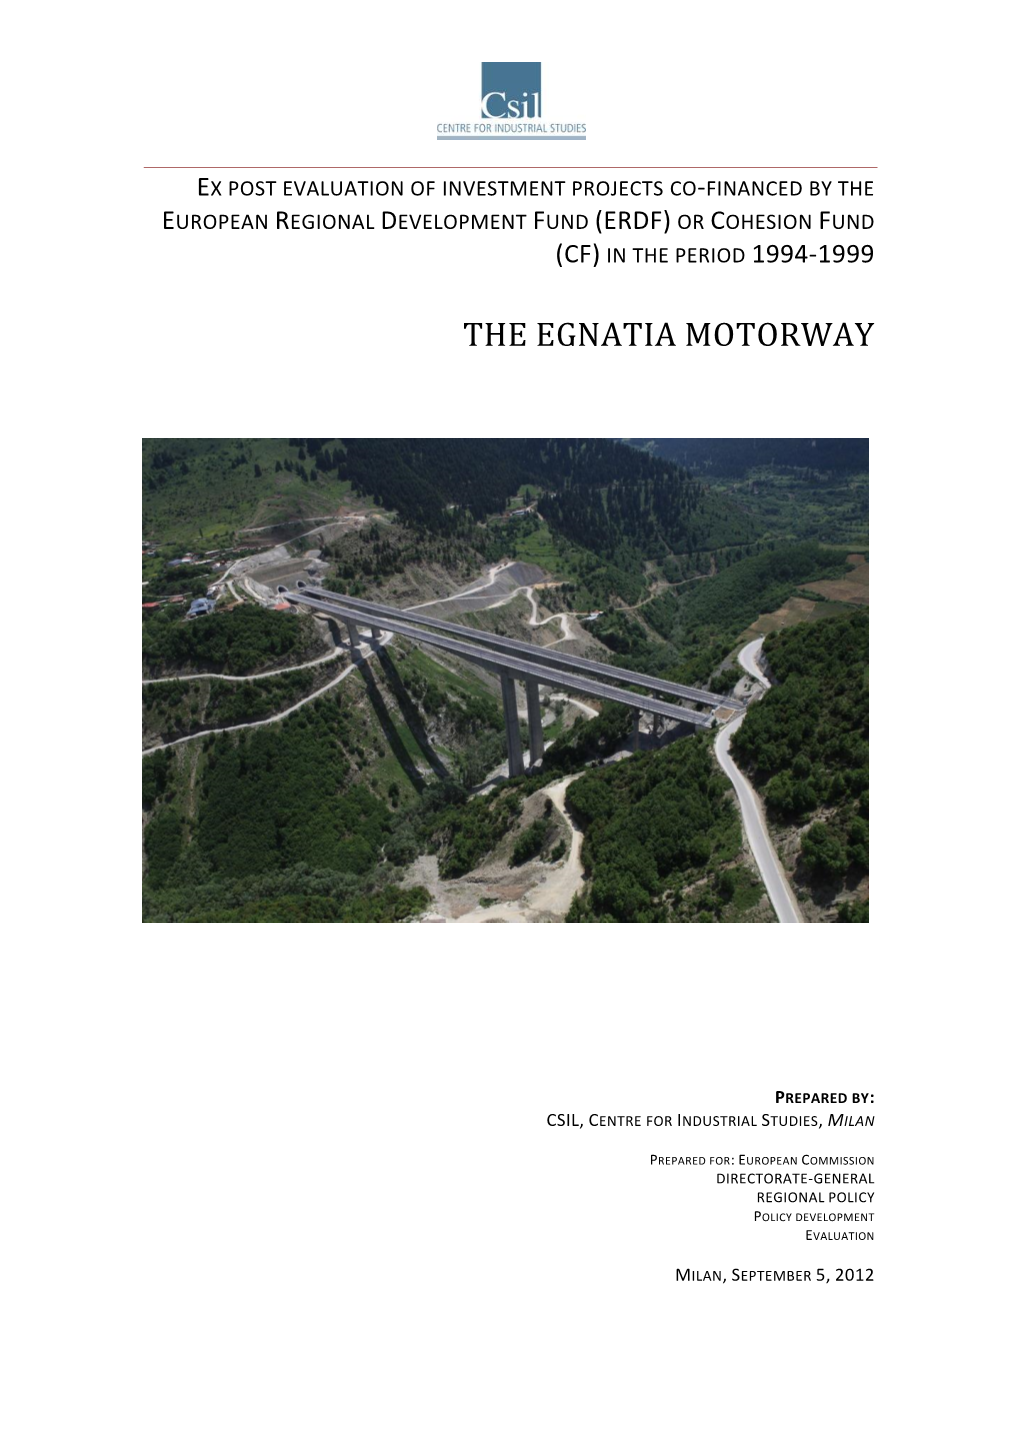 The Egnatia Motorway